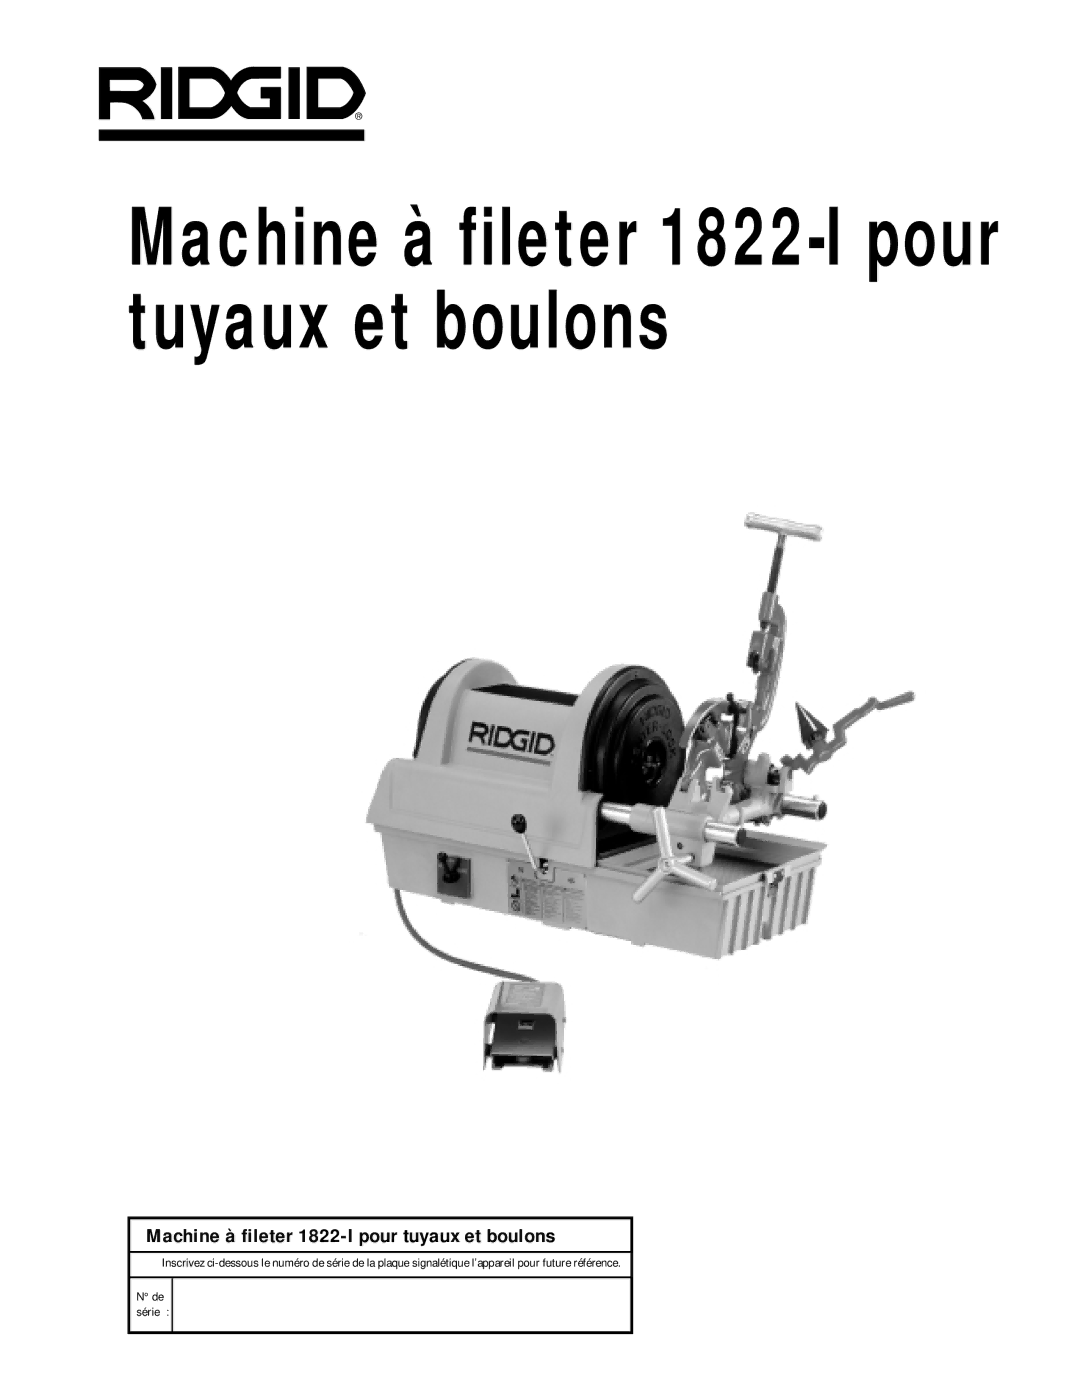 RIDGID manual Machine à fileter 1822-I pour tuyaux et boulons 